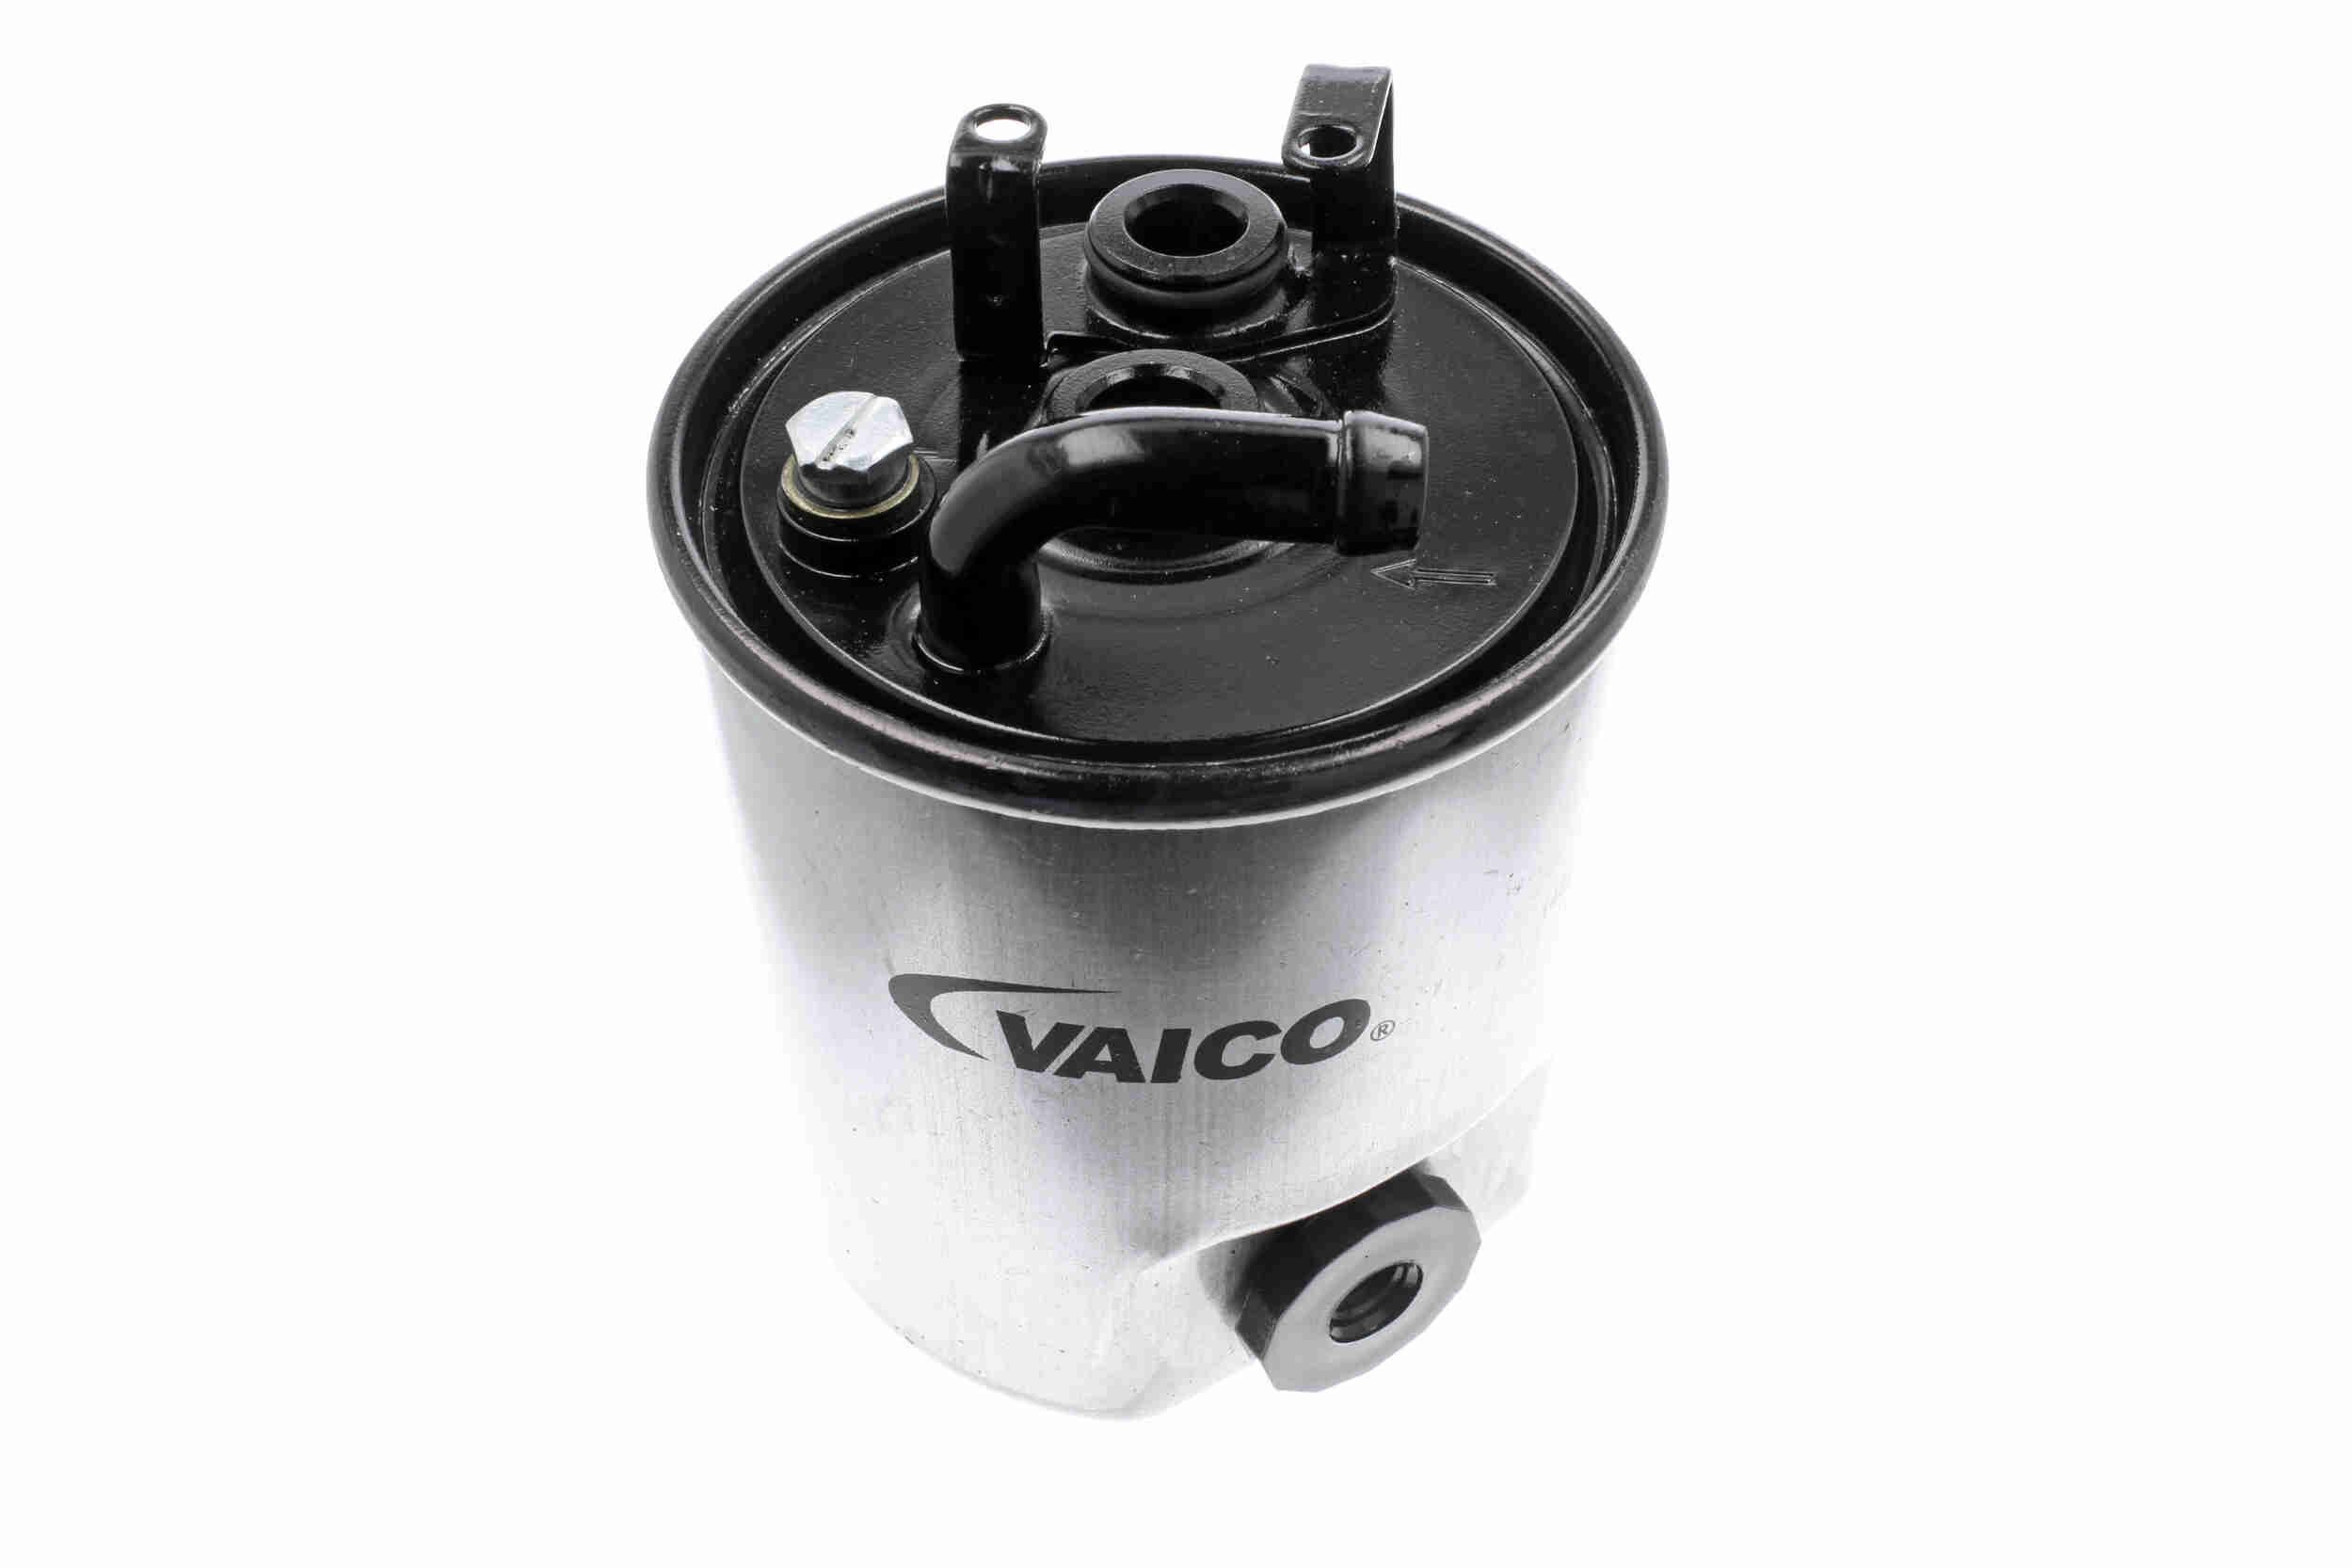 VAICO V30-9925 Fuel filter Spin-on Filter, 10mm, Original VAICO Quality